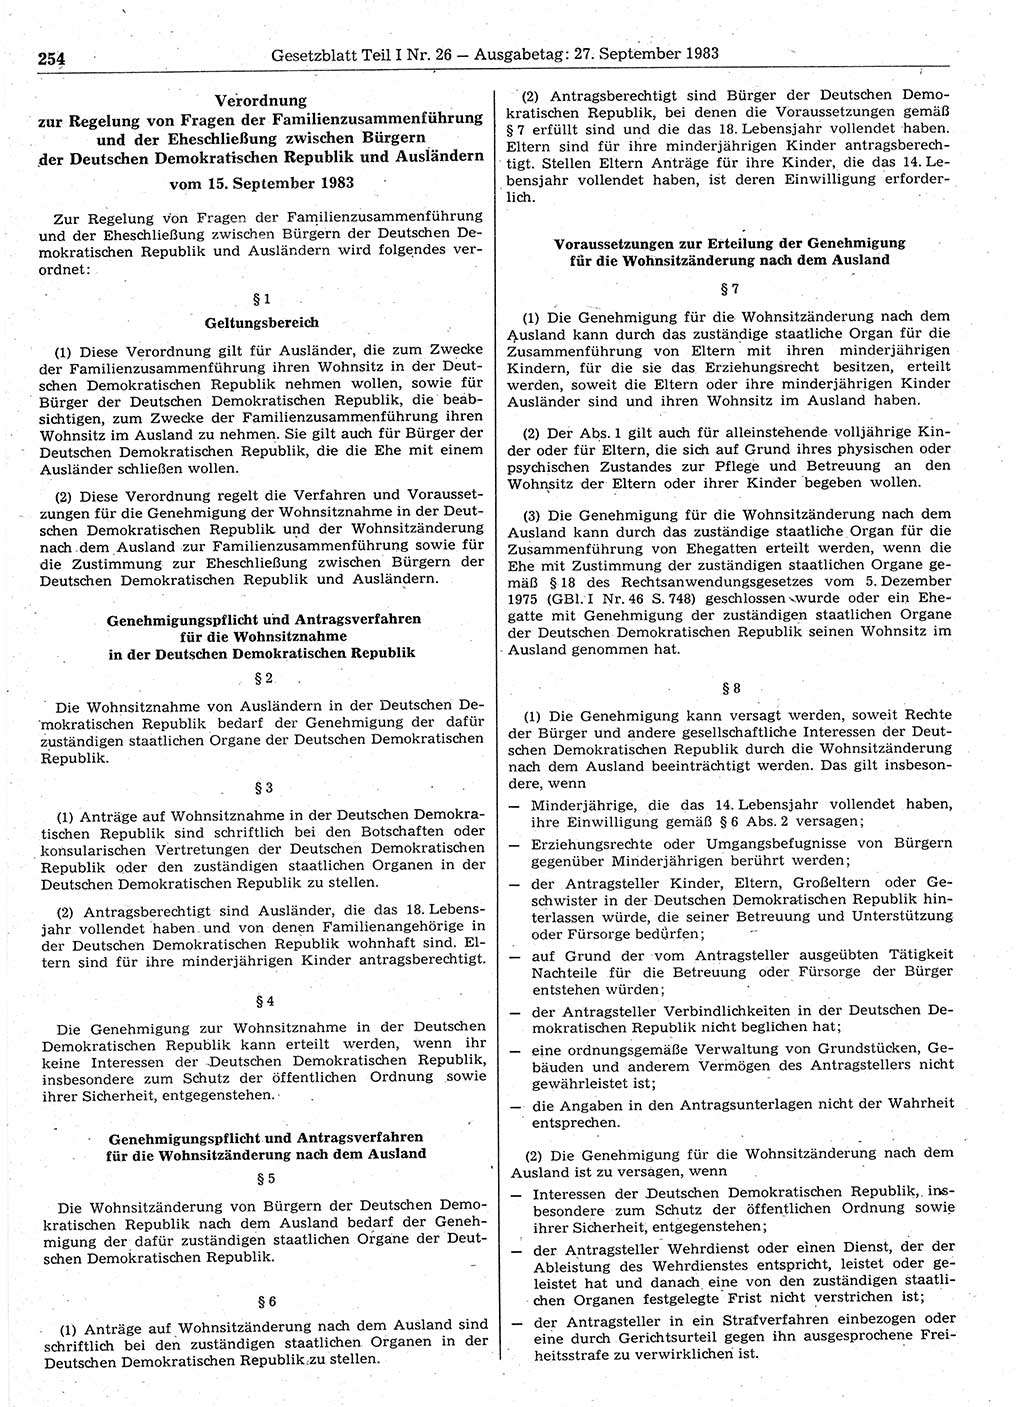 Gesetzblatt (GBl.) der Deutschen Demokratischen Republik (DDR) Teil Ⅰ 1983, Seite 254 (GBl. DDR Ⅰ 1983, S. 254)